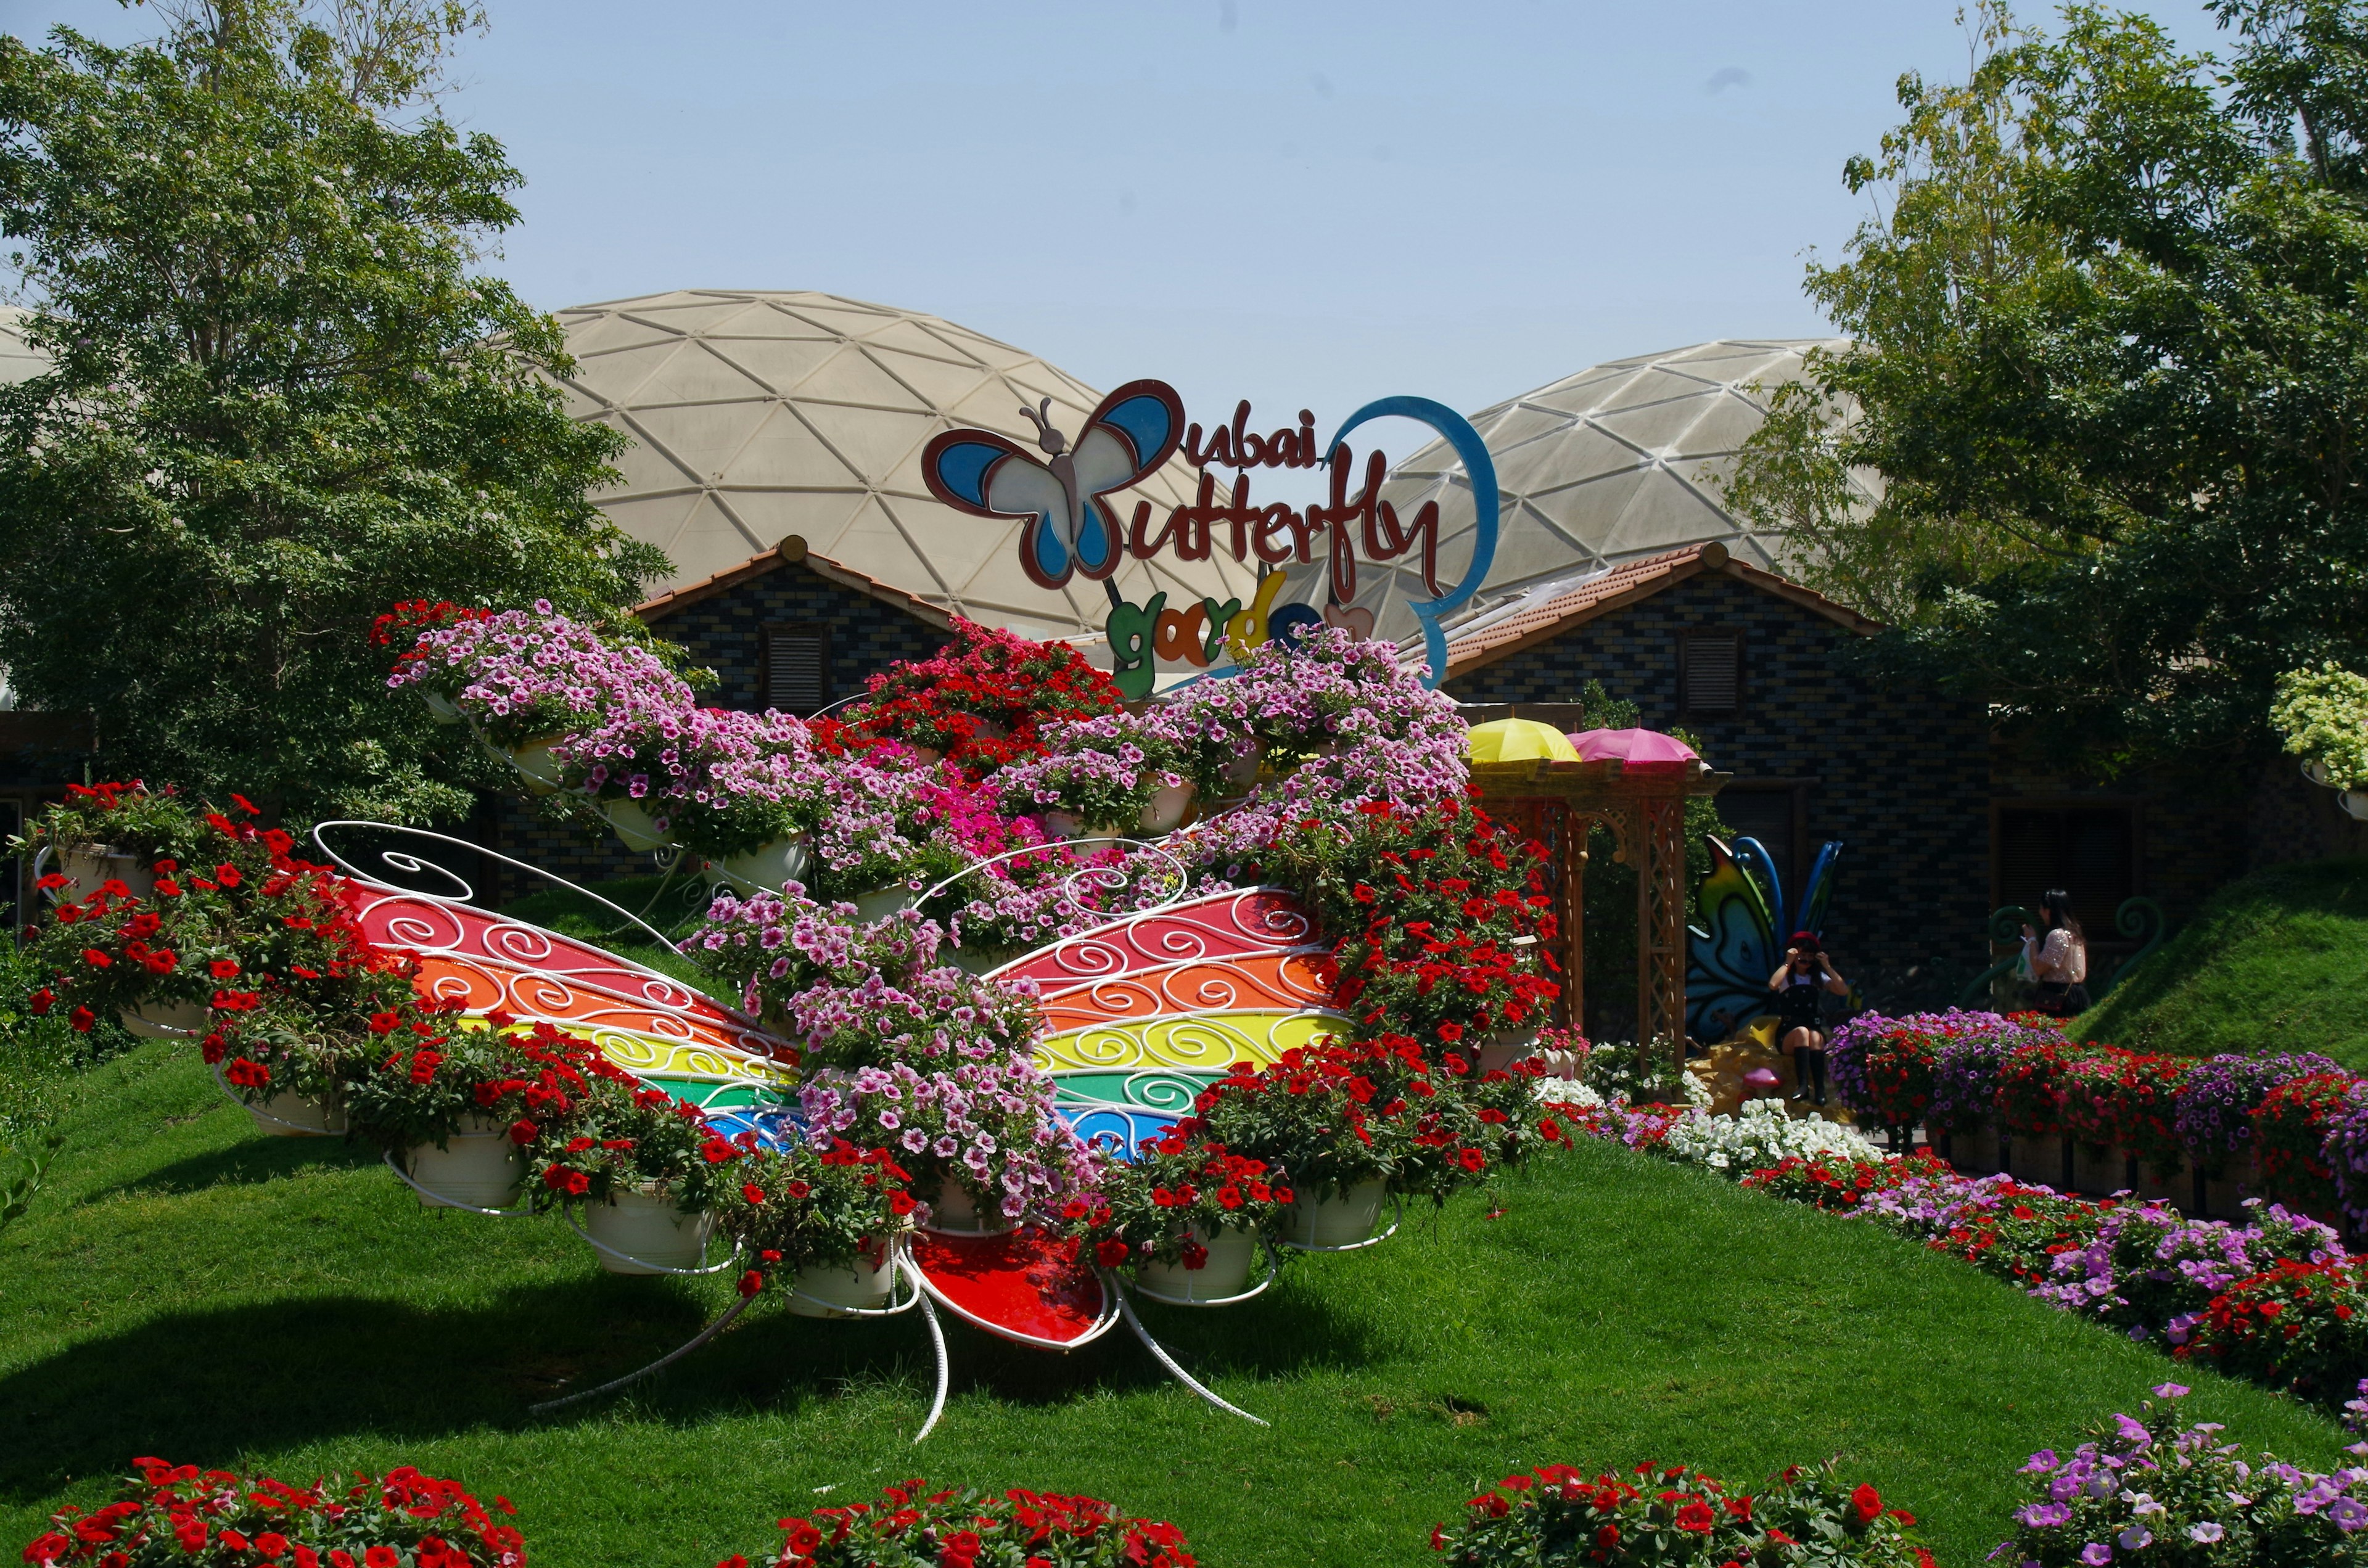 Dubai Butterfly Garden Tour Packages